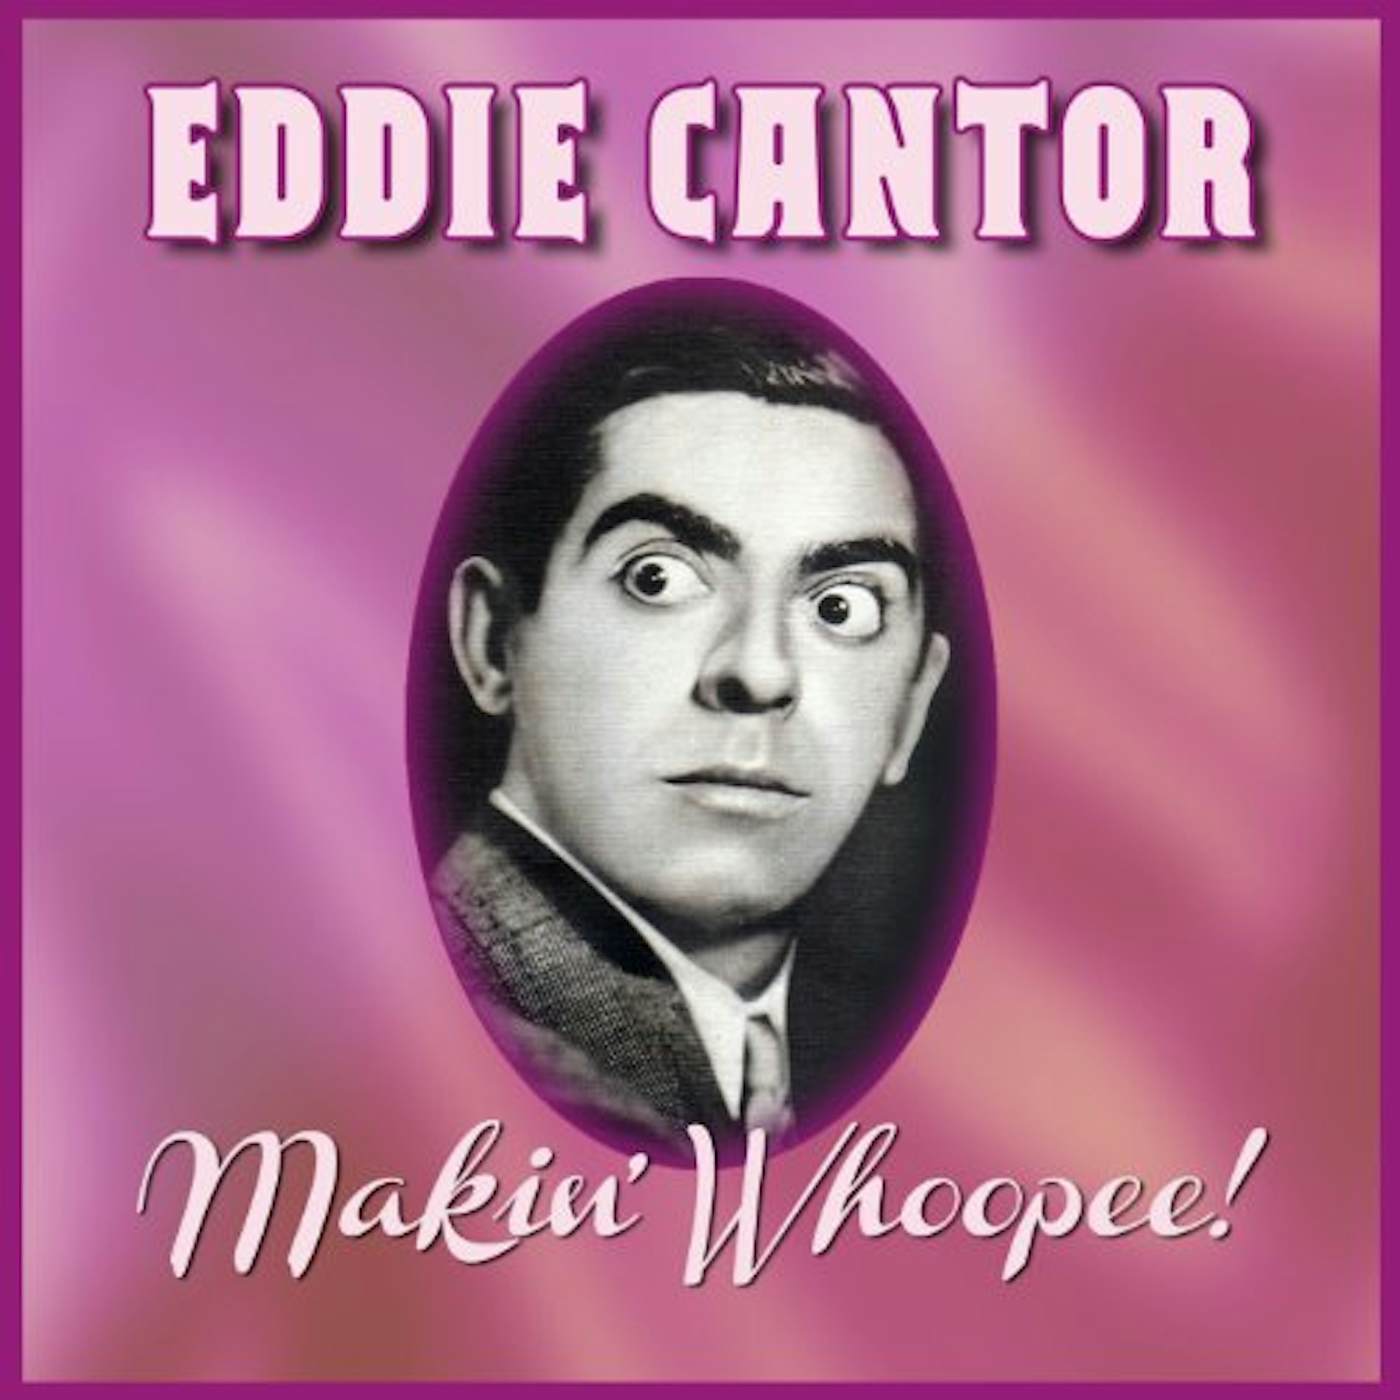 Eddie Cantor MAKIN' WHOOPEE CD